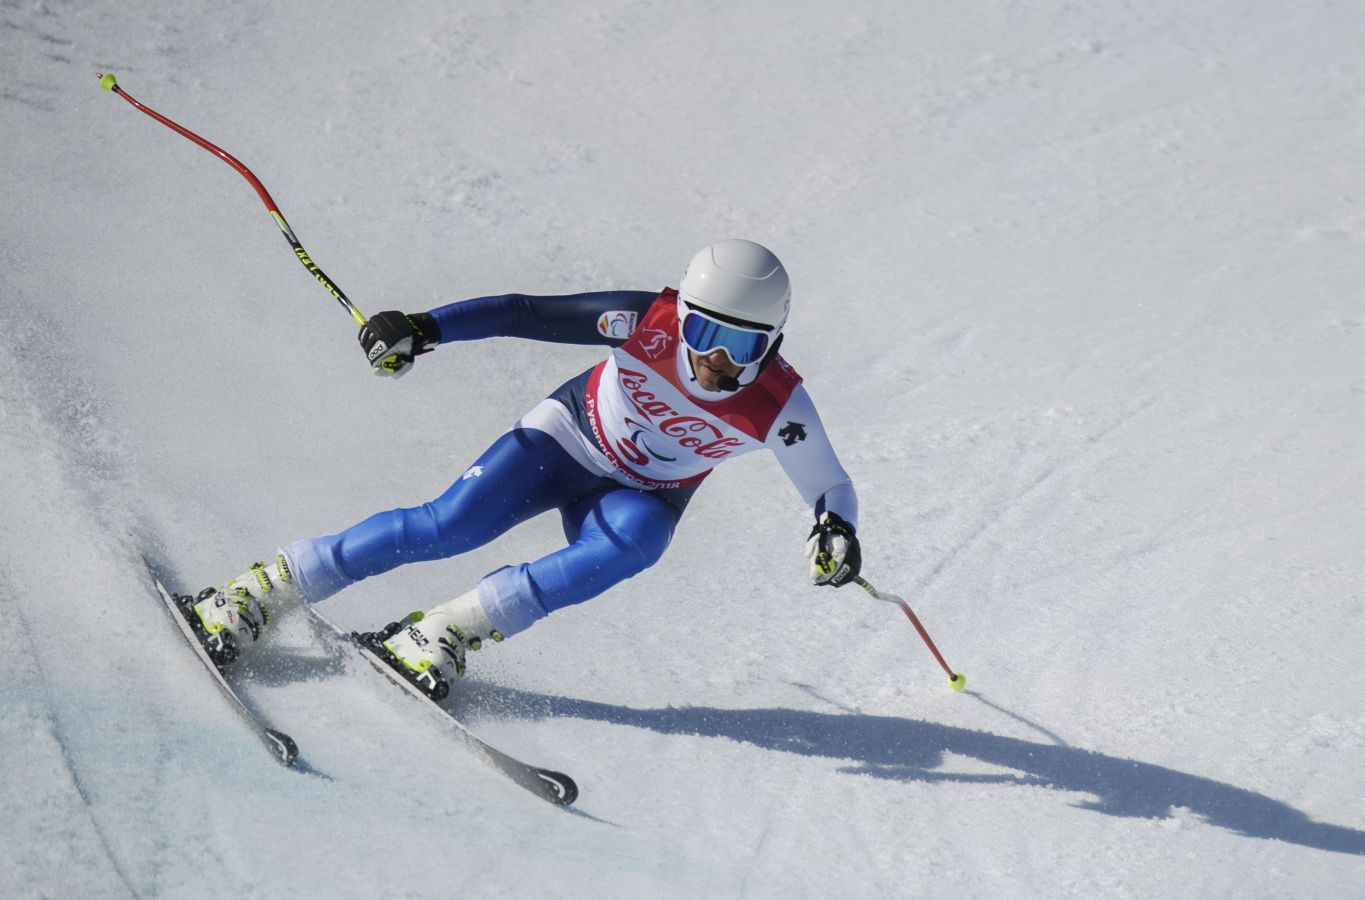 El esquiador donostiarra y su guía Miguel Galindo logran su primer metal en los Juegos Paralímpicos de PyeongChang